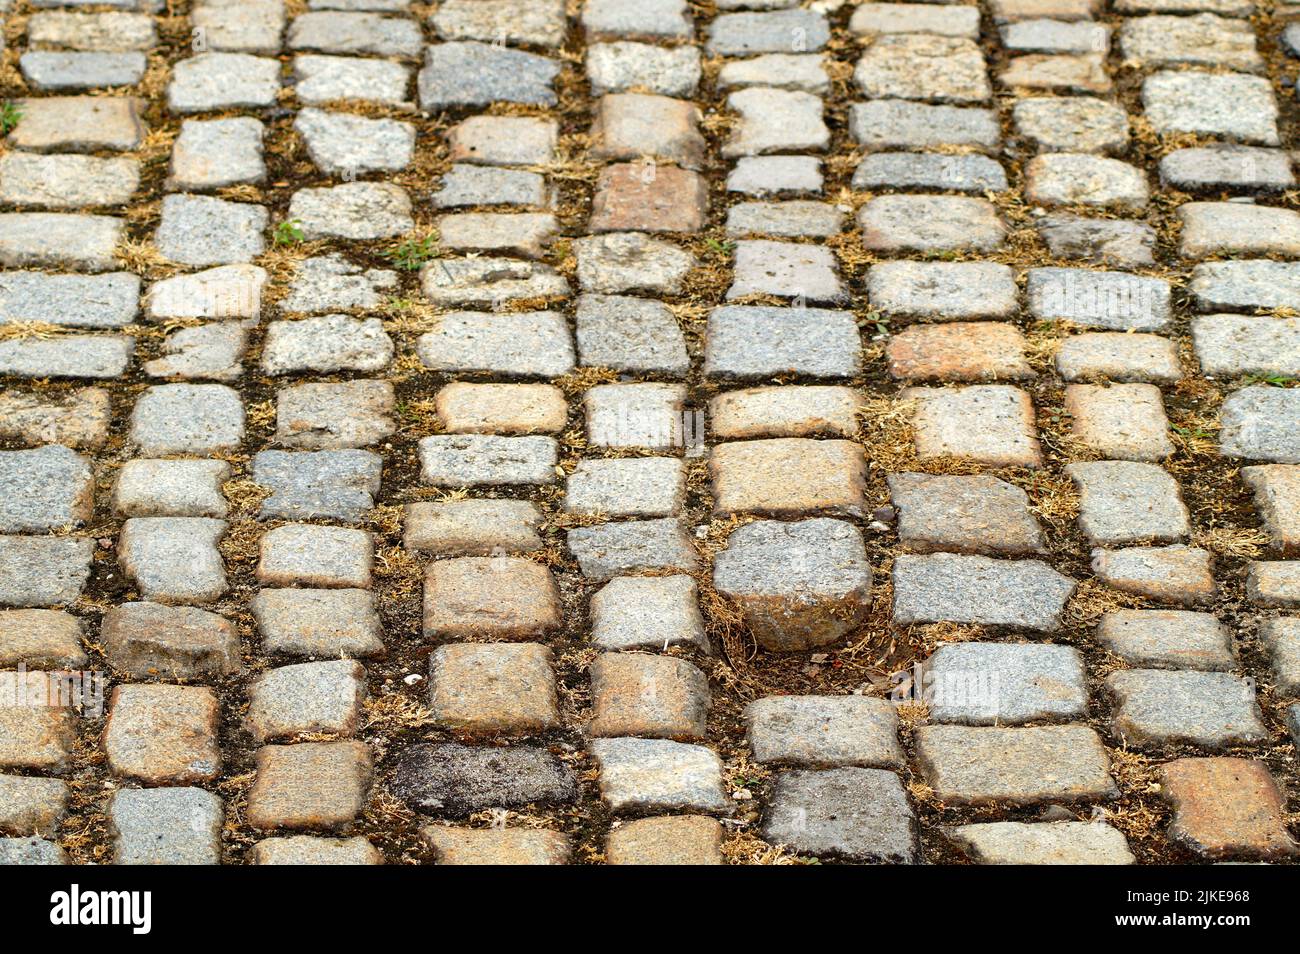 pietre di pavimentazione di pietre rettangolari e quadrate di diversi colori e dimensioni. Manca una pietra dalla strada acciottolata. Foto Stock